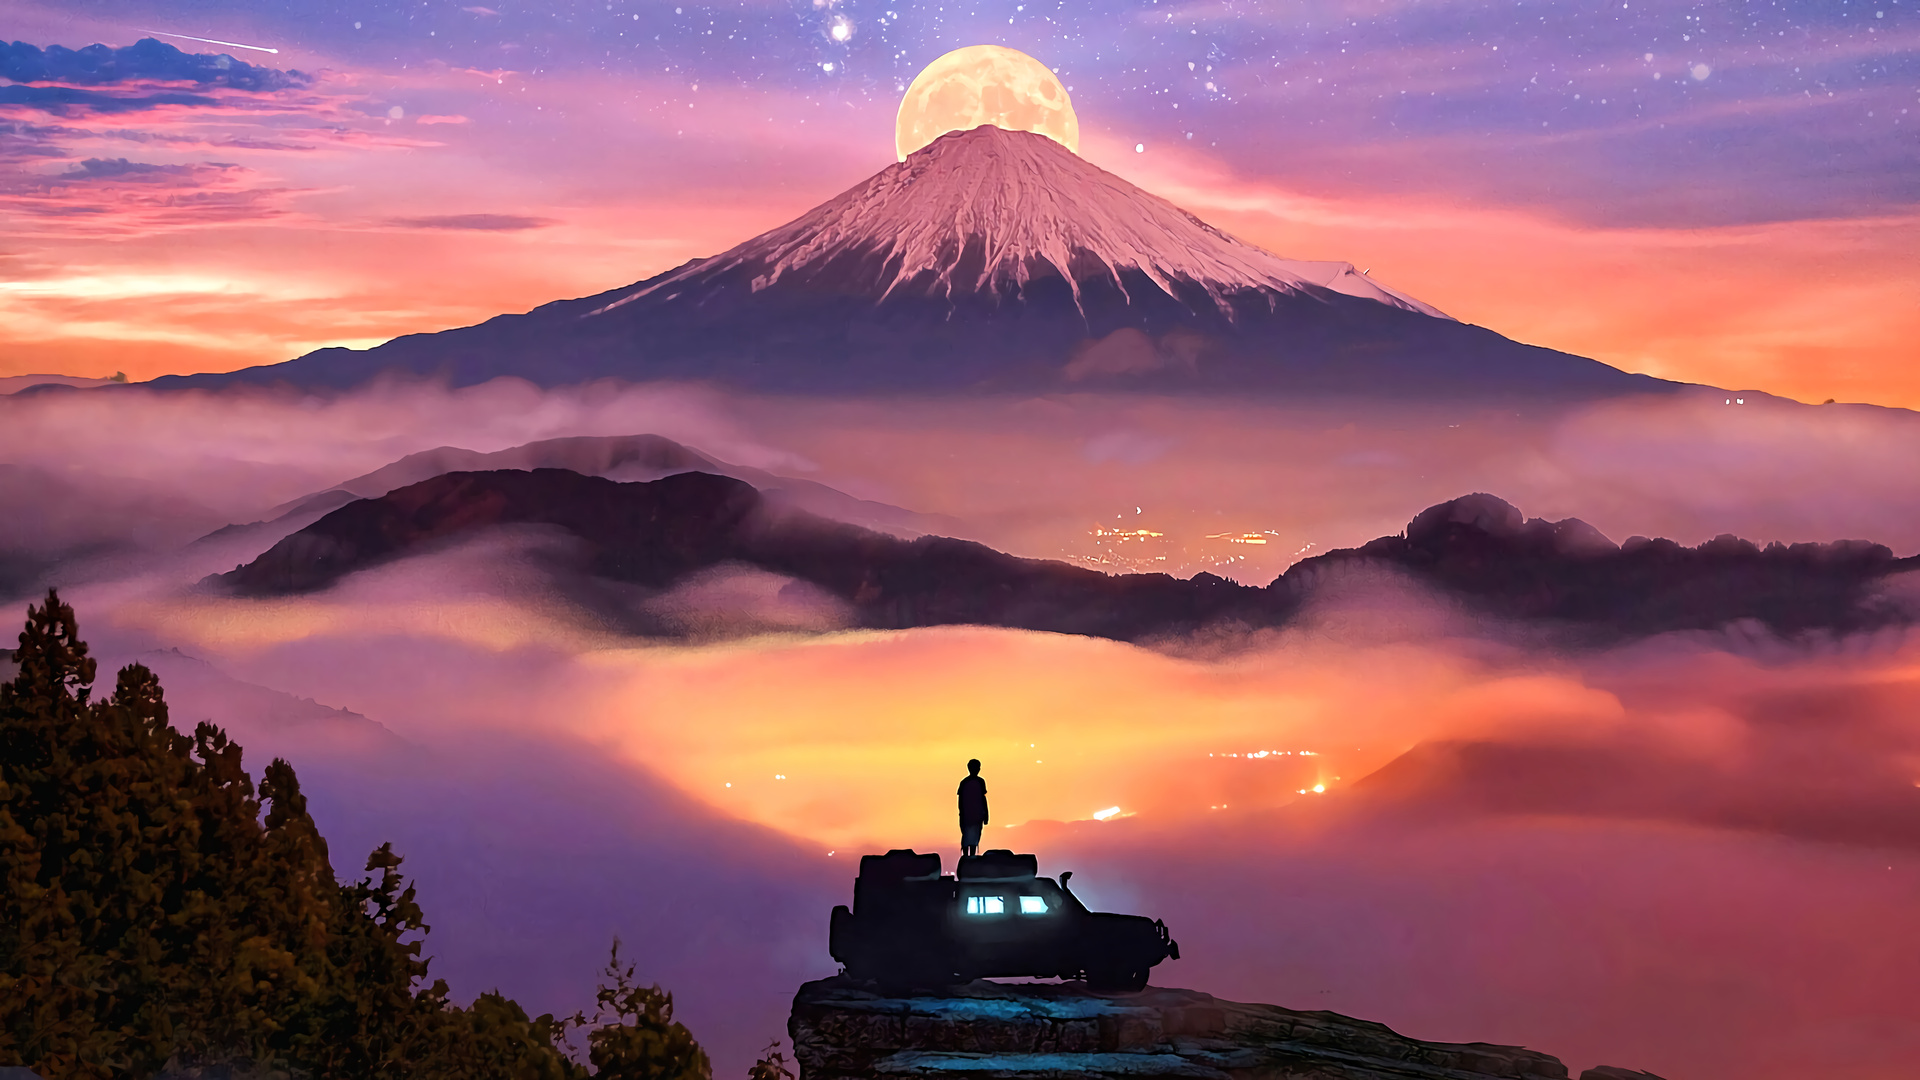 Wallpaper, artwork, digital, stars, Mount Fuji, Moon, clouds, neon glow, mist 1920x1080